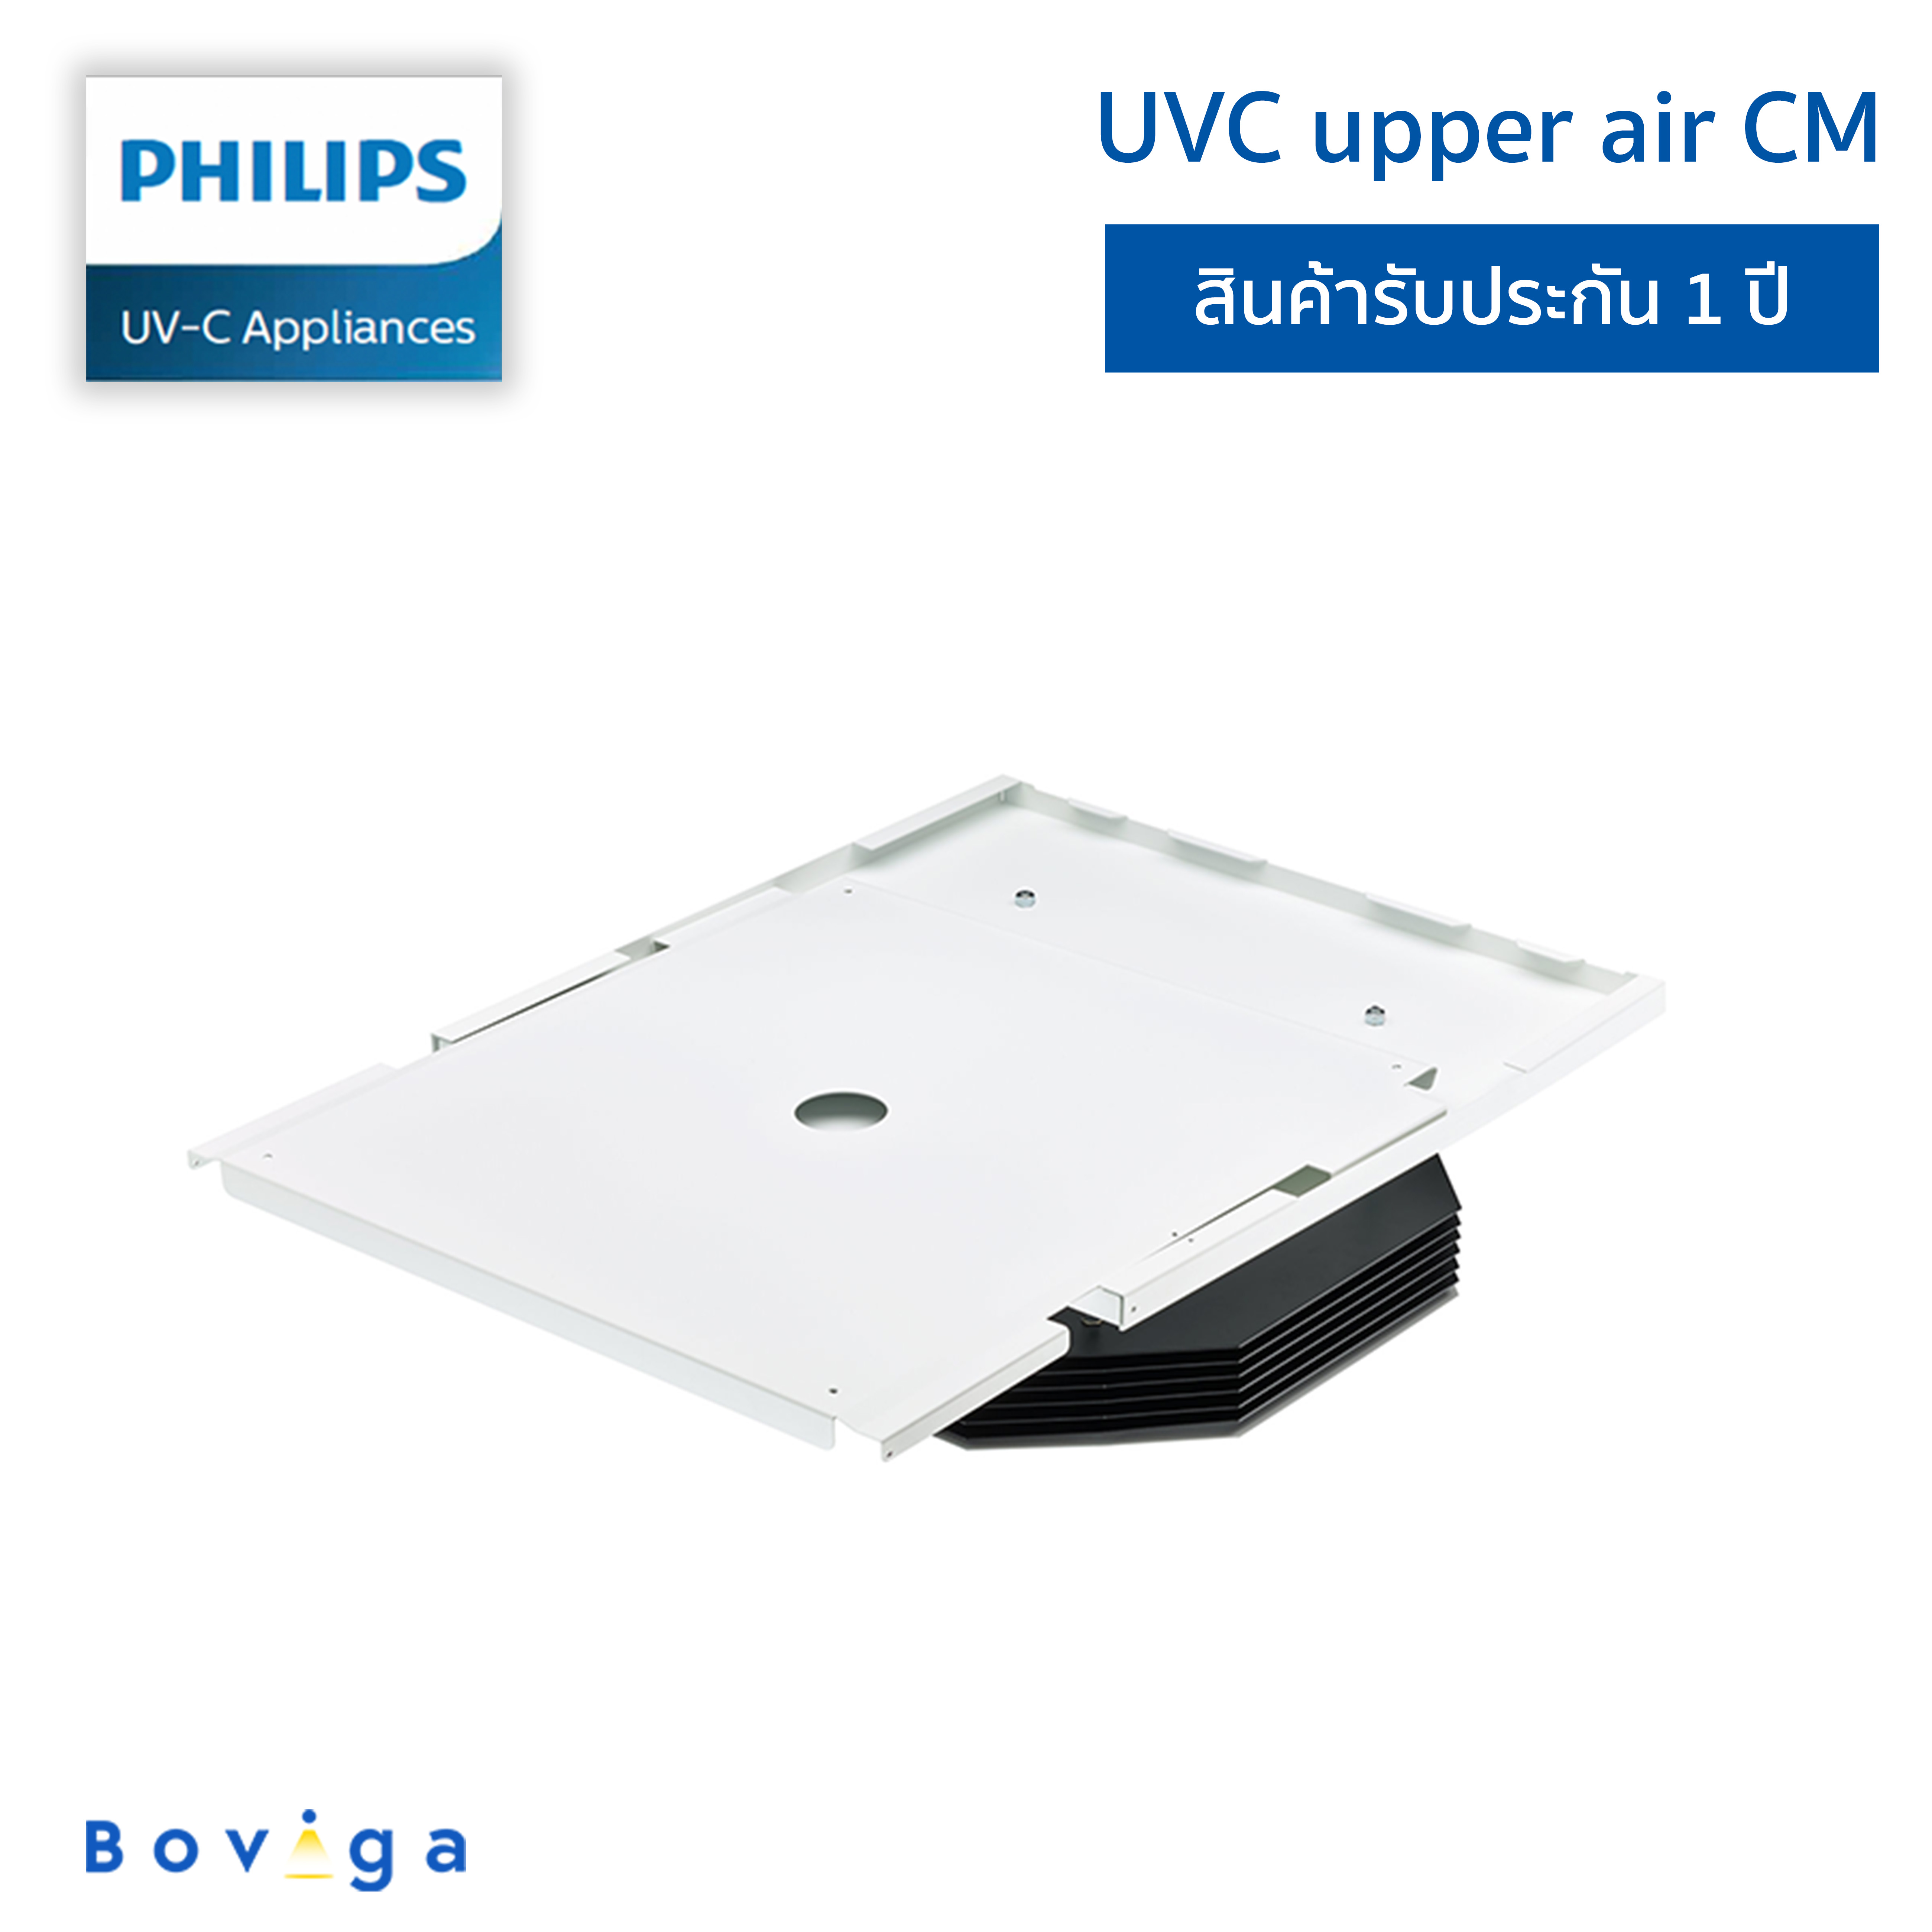 ฟิลิปส์ UVC เครื่องฆ่าเชื้อโรคในอากาศแบบติดตั้งเพดาน | UVC Disinfection upper air CM